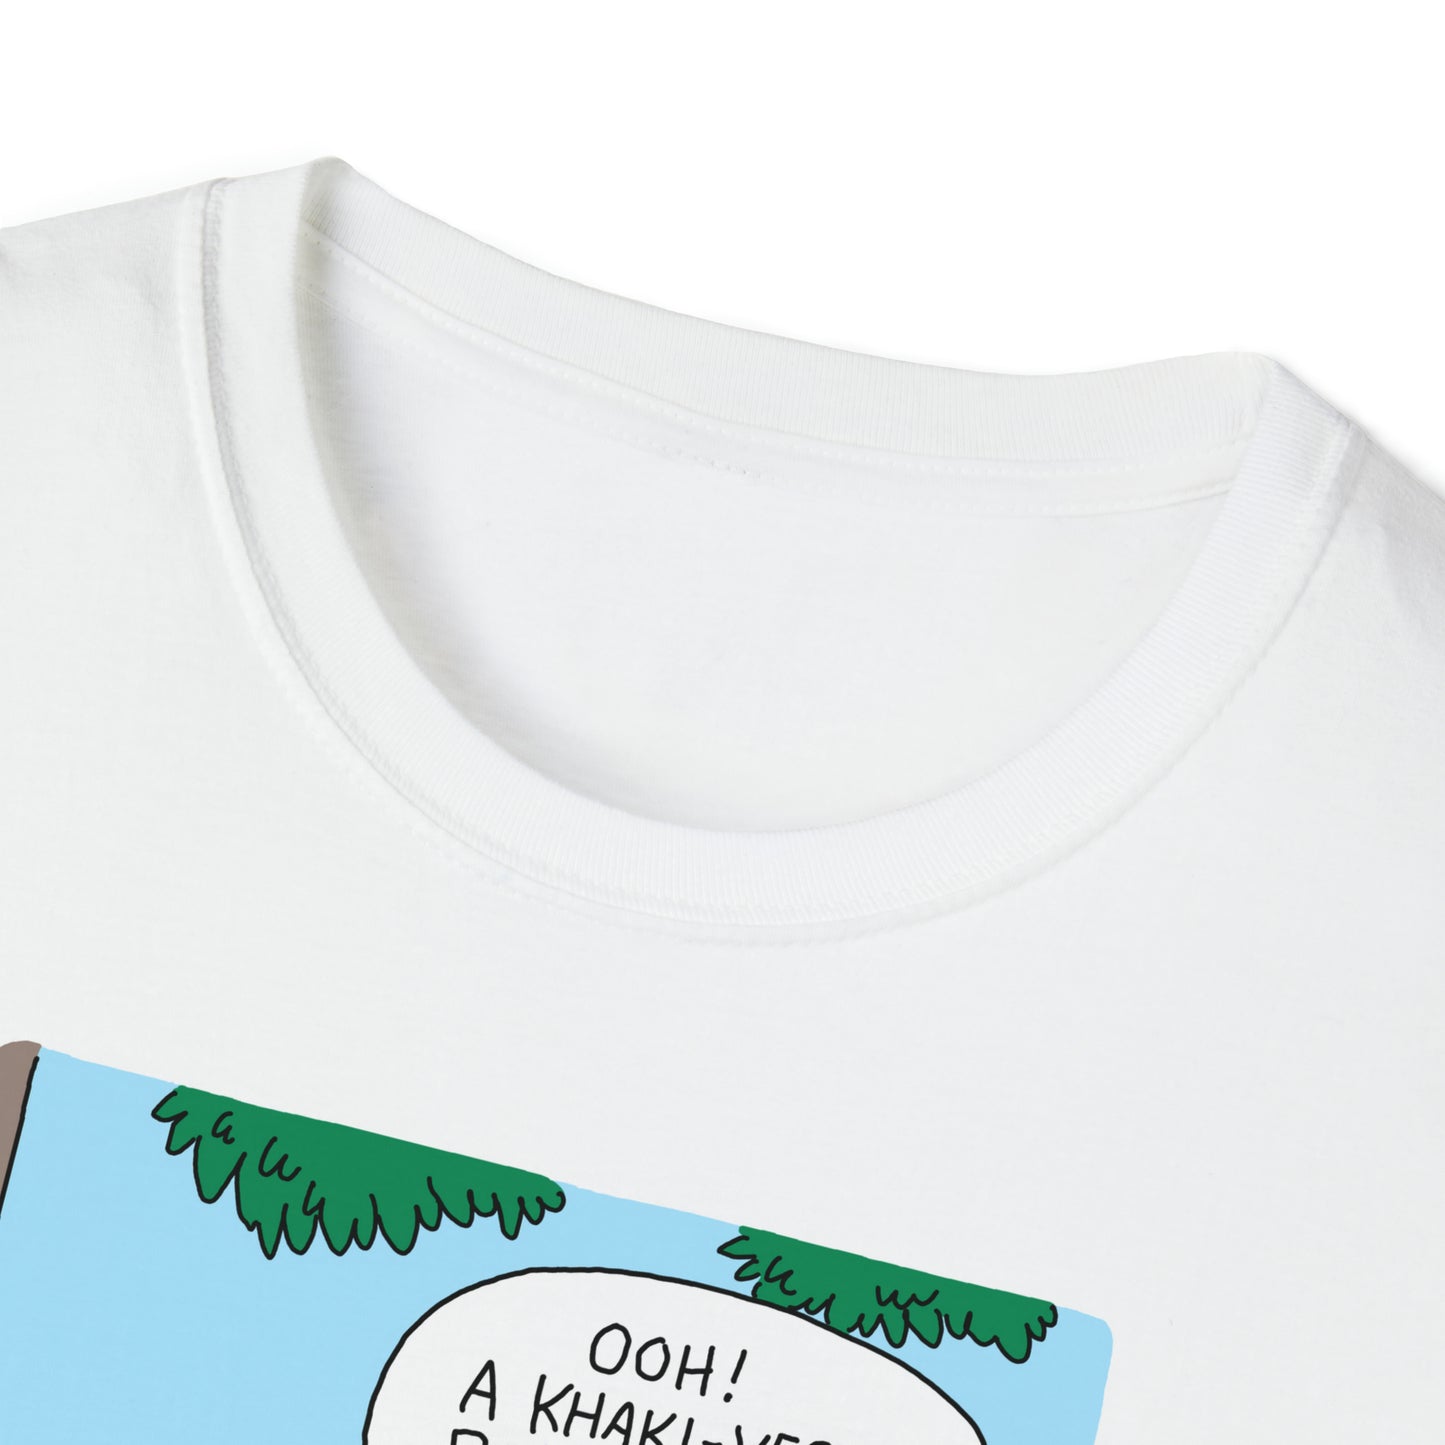 Rhymes With Orange "Birdwatcherwatchers" Unisex Softstyle T-Shirt